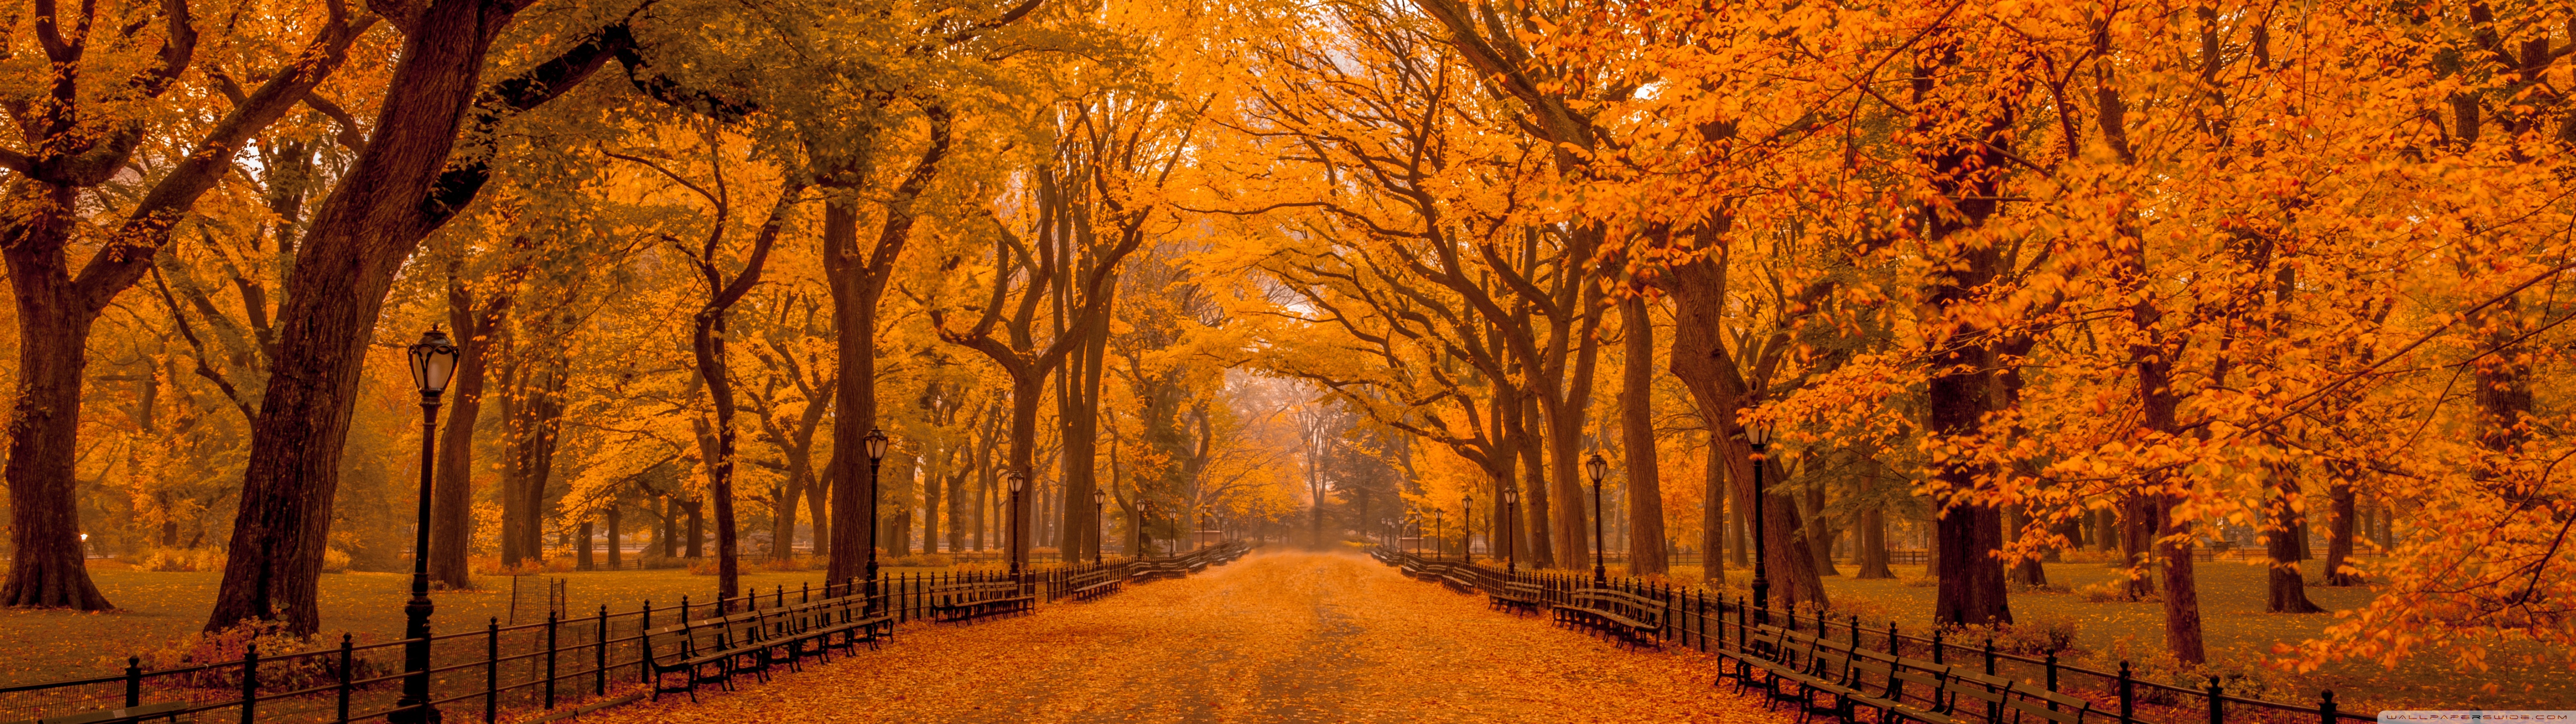 Mùa thu: Mùa thu là một trong những khoảnh khắc đẹp nhất trong năm với sắc đỏ, vàng, cam từ những tán cây rực rỡ. Hãy cùng thưởng thức hình ảnh về mùa thu với những tuyệt tác nghệ thuật được tạo nên từ thiên nhiên và con người, giúp bạn tận hưởng những ngày tháng này một cách tuyệt vời nhất.